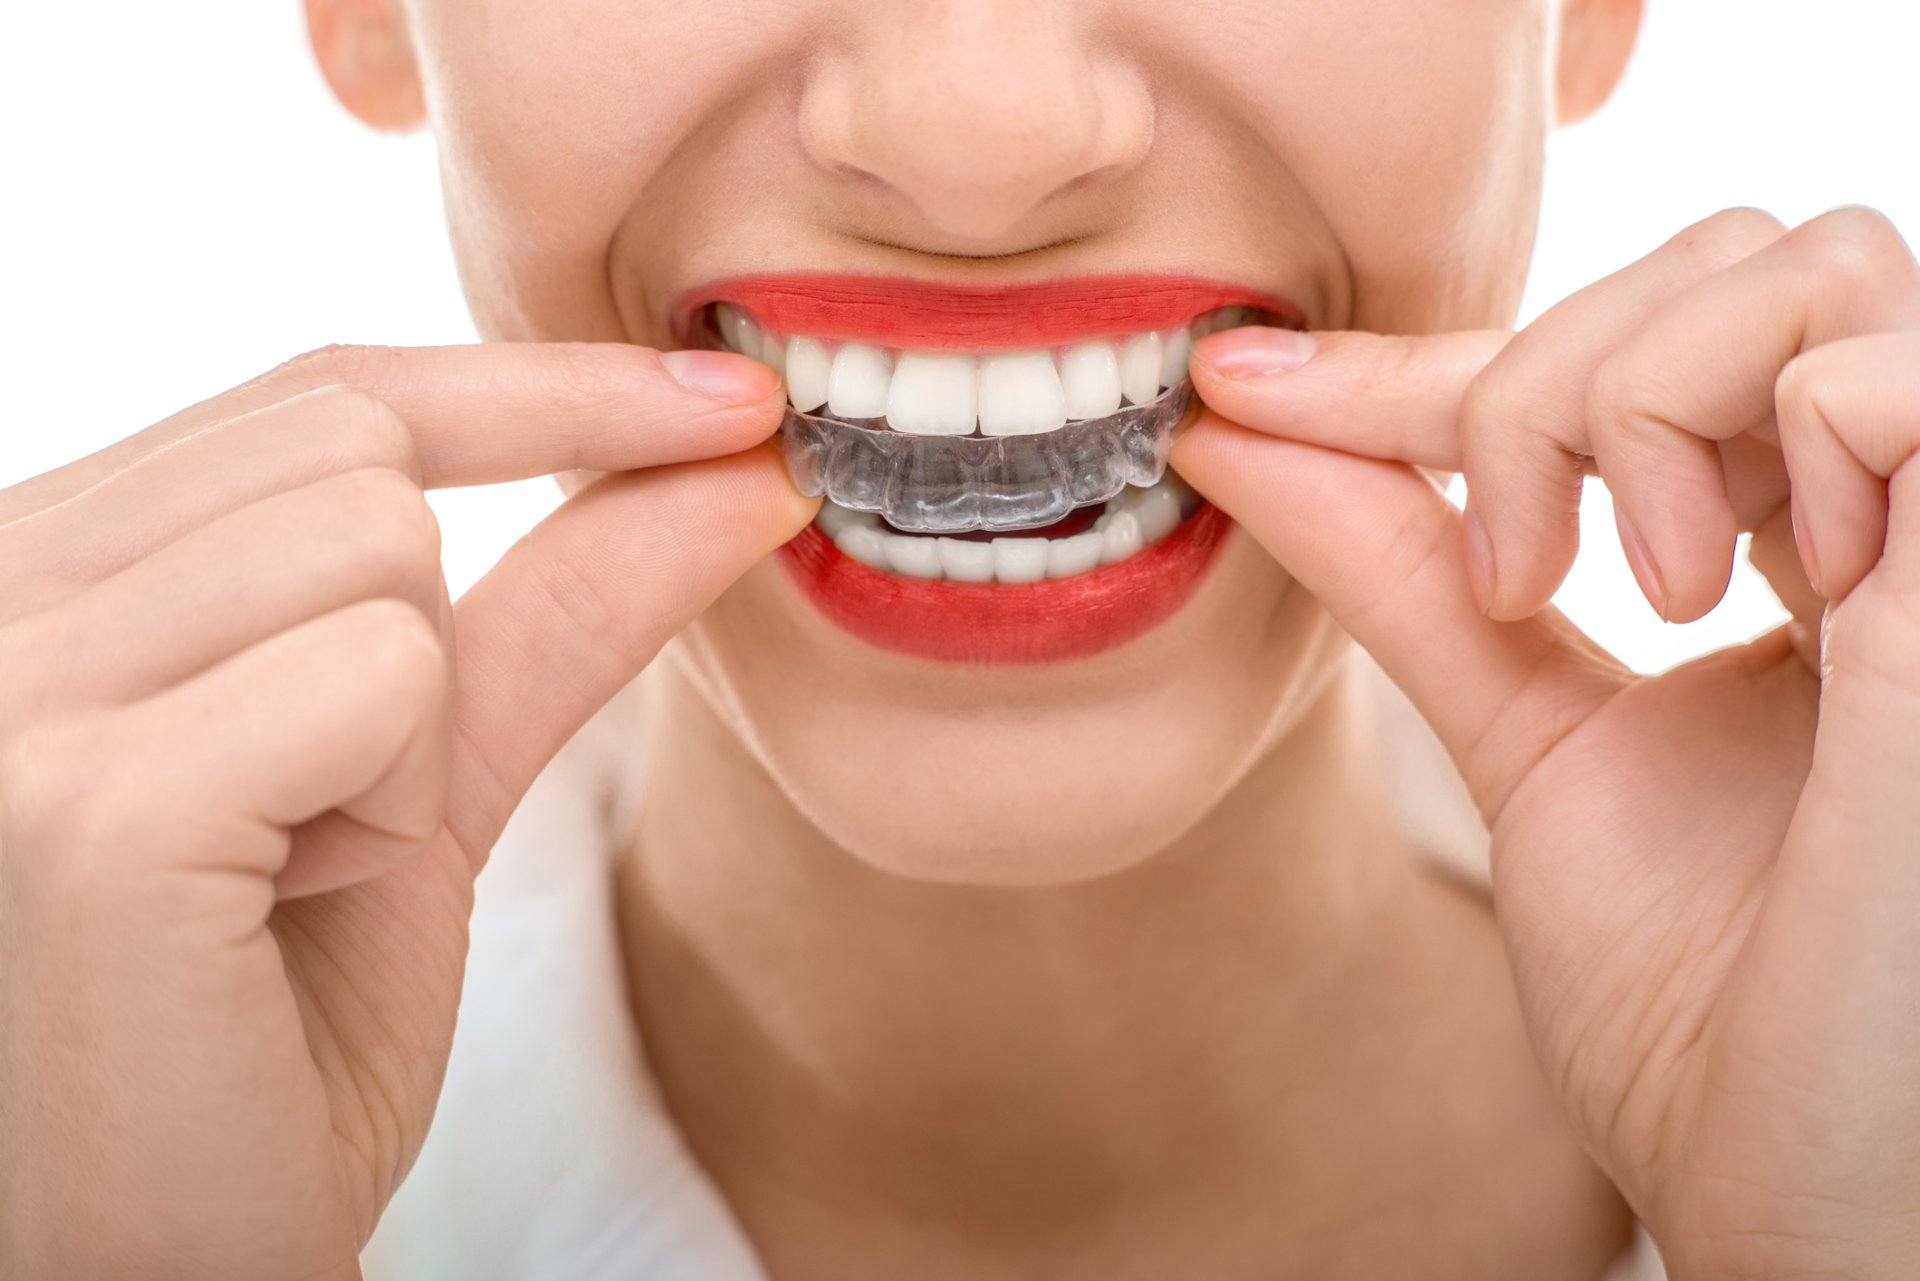 Faccette dentali con denti storti: è possibile? Tecniche e materiali